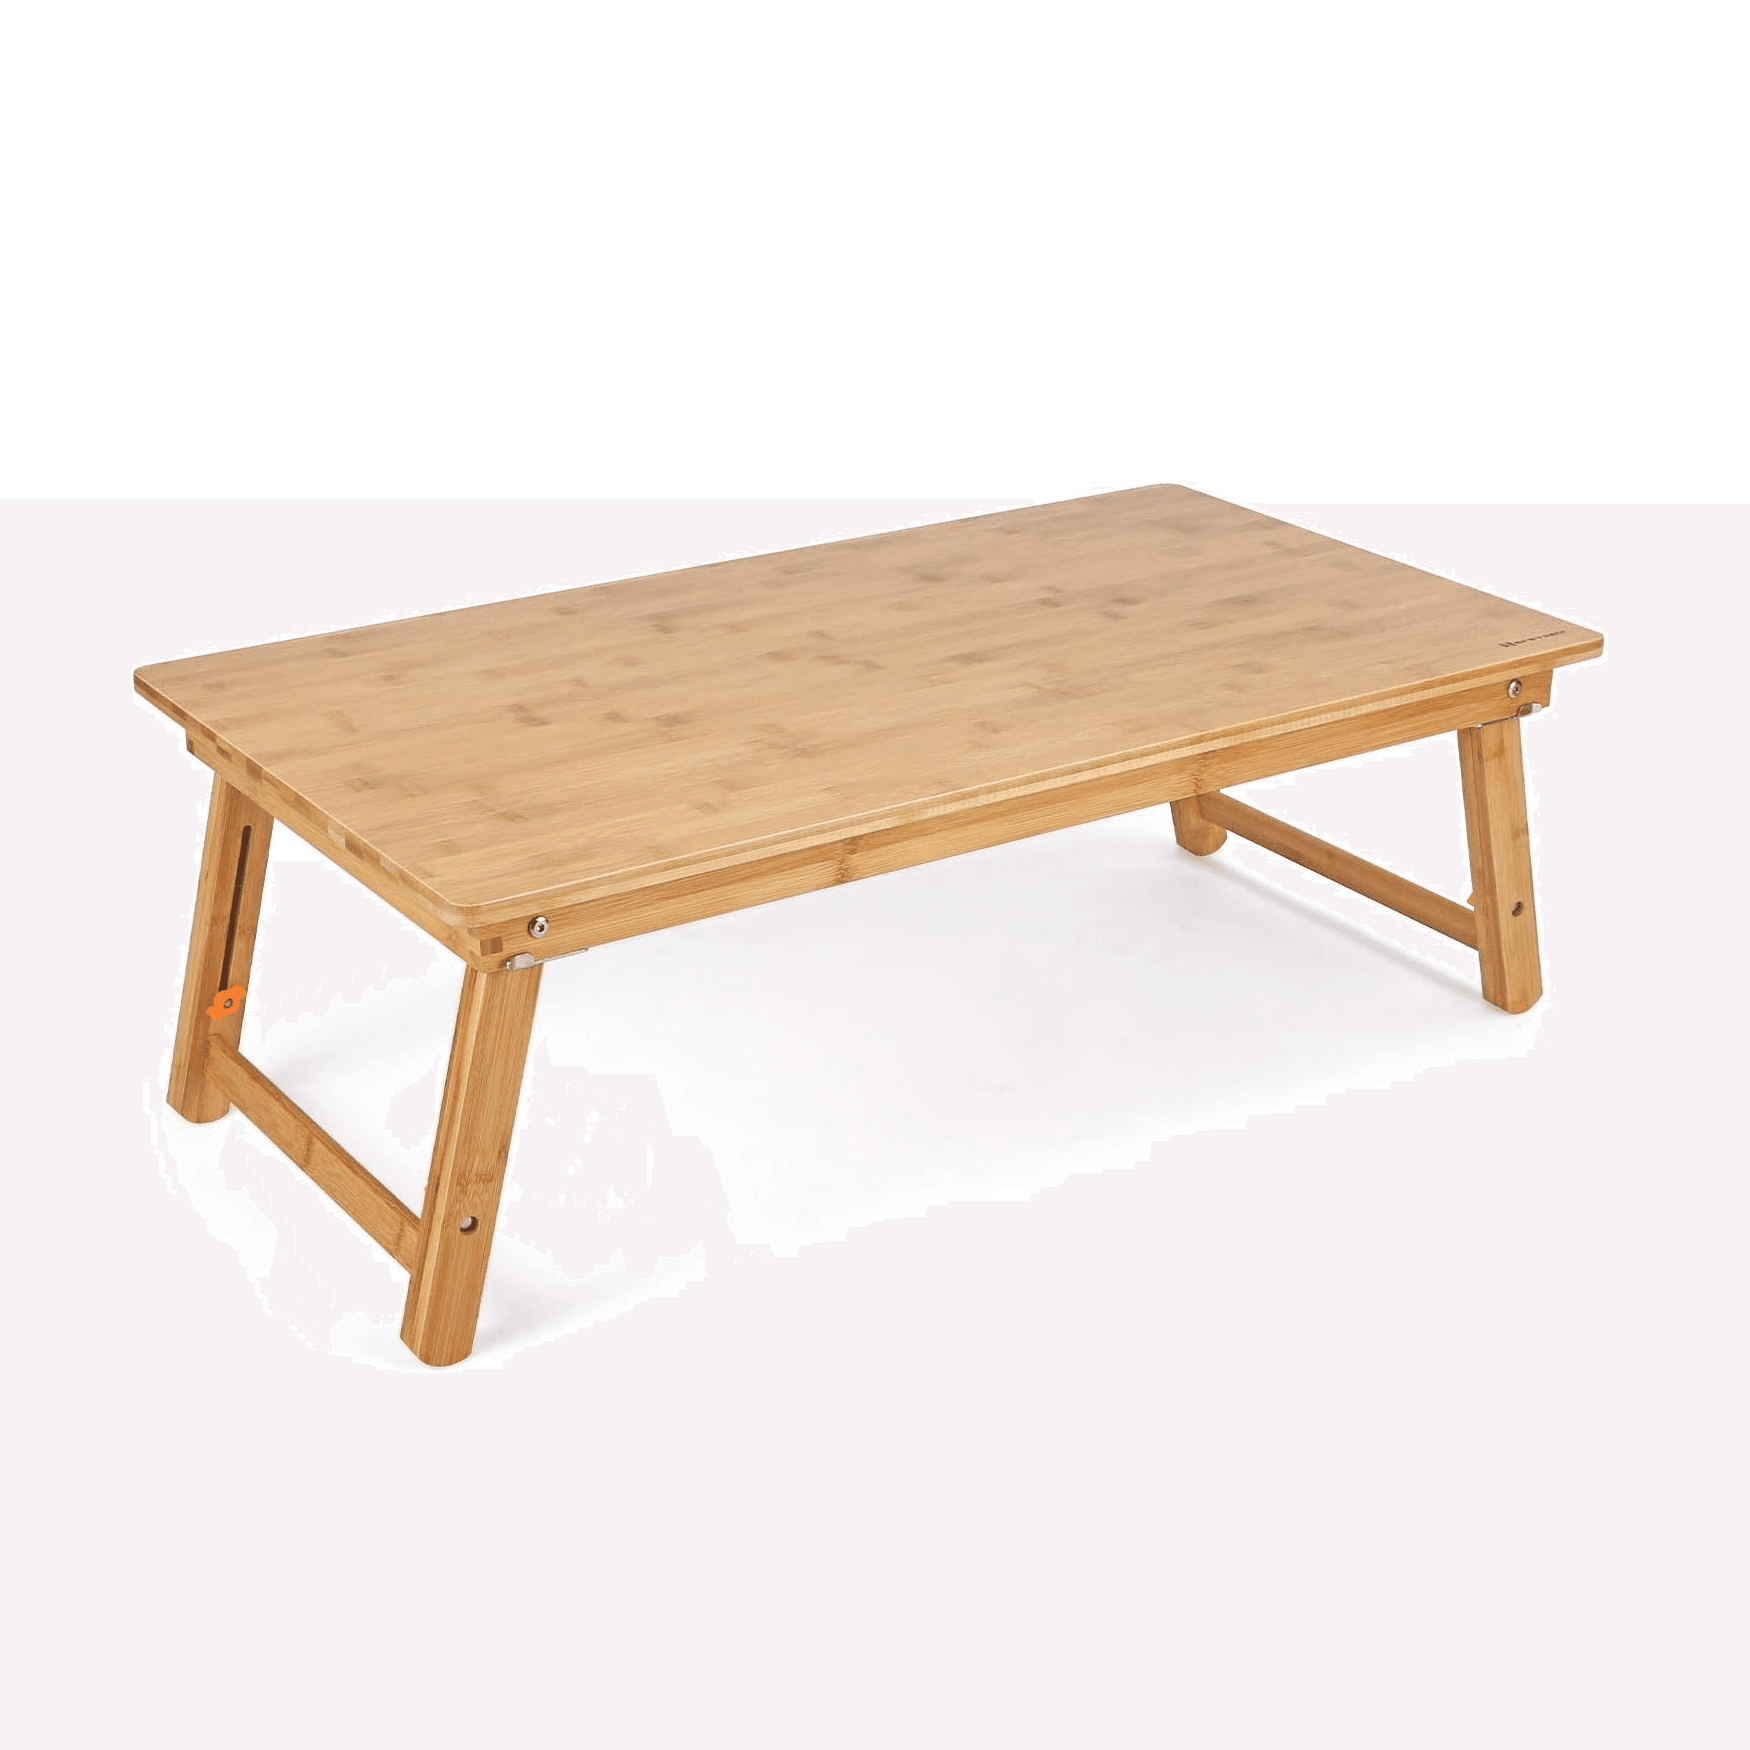 Montessori Nnewvante Chowki Floor Table With Adjustable Legs